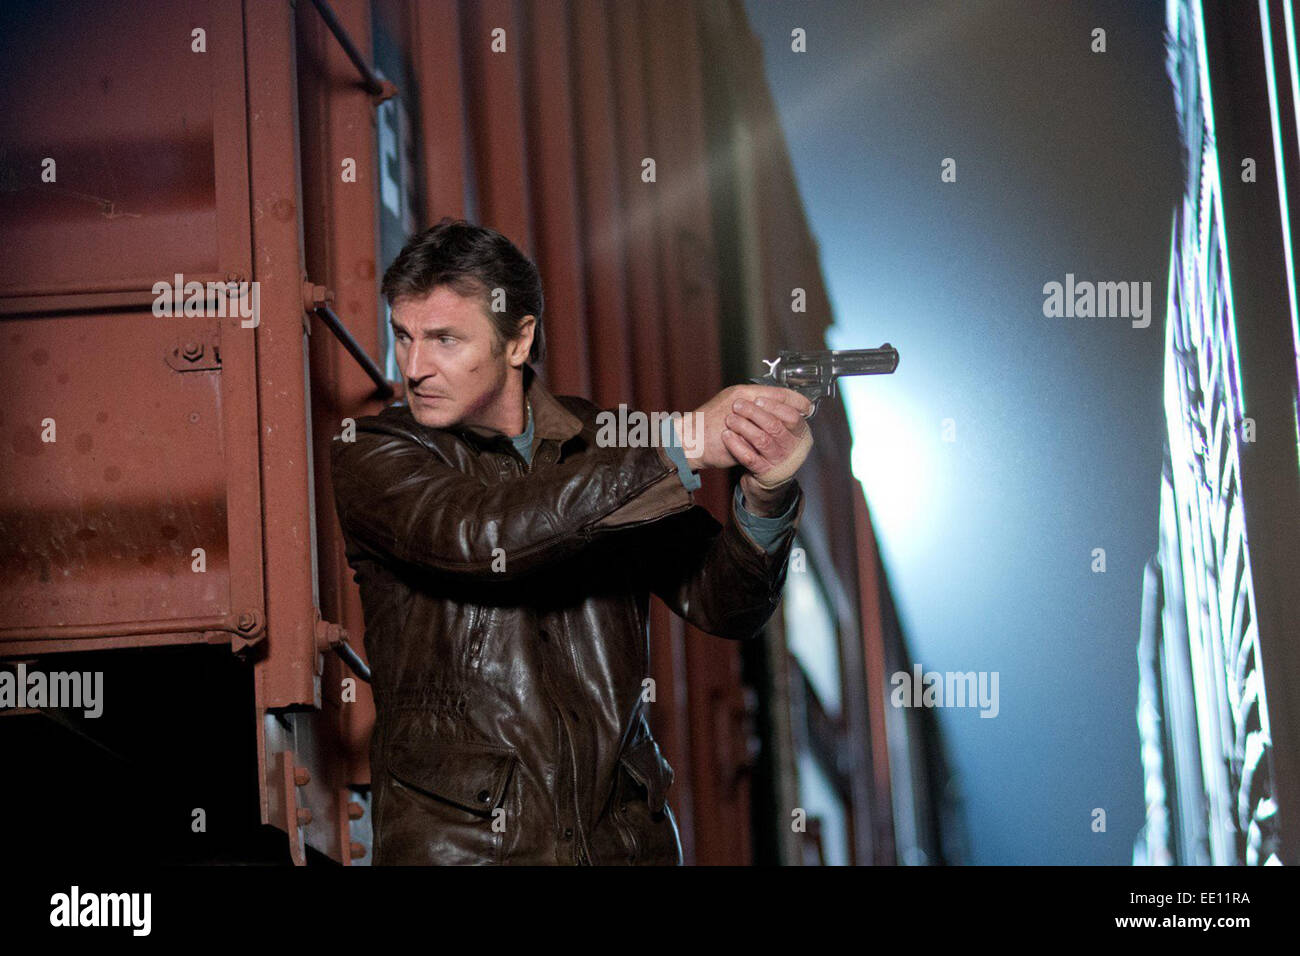 Eseguire tutta la notte è un prossimo film diretto da Jaume Collet-Serra. Il film stelle Liam Neeson, Joel Kinnaman e Ed Harris. Il film è programmato per essere rilasciato il 17 aprile 2015. Foto Stock